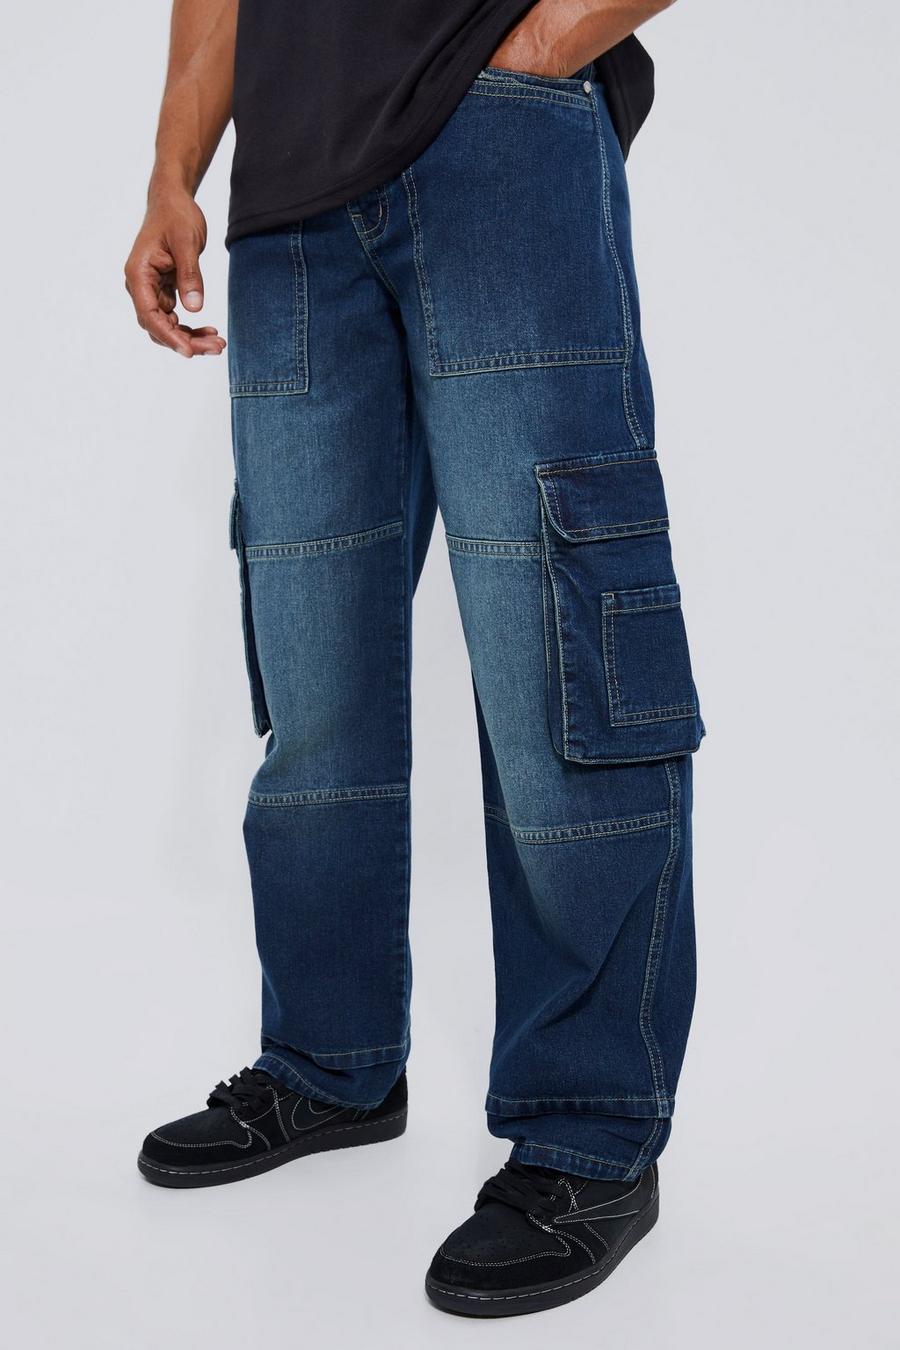 Baggy Fit Cargo Pants - Denim blue - Men